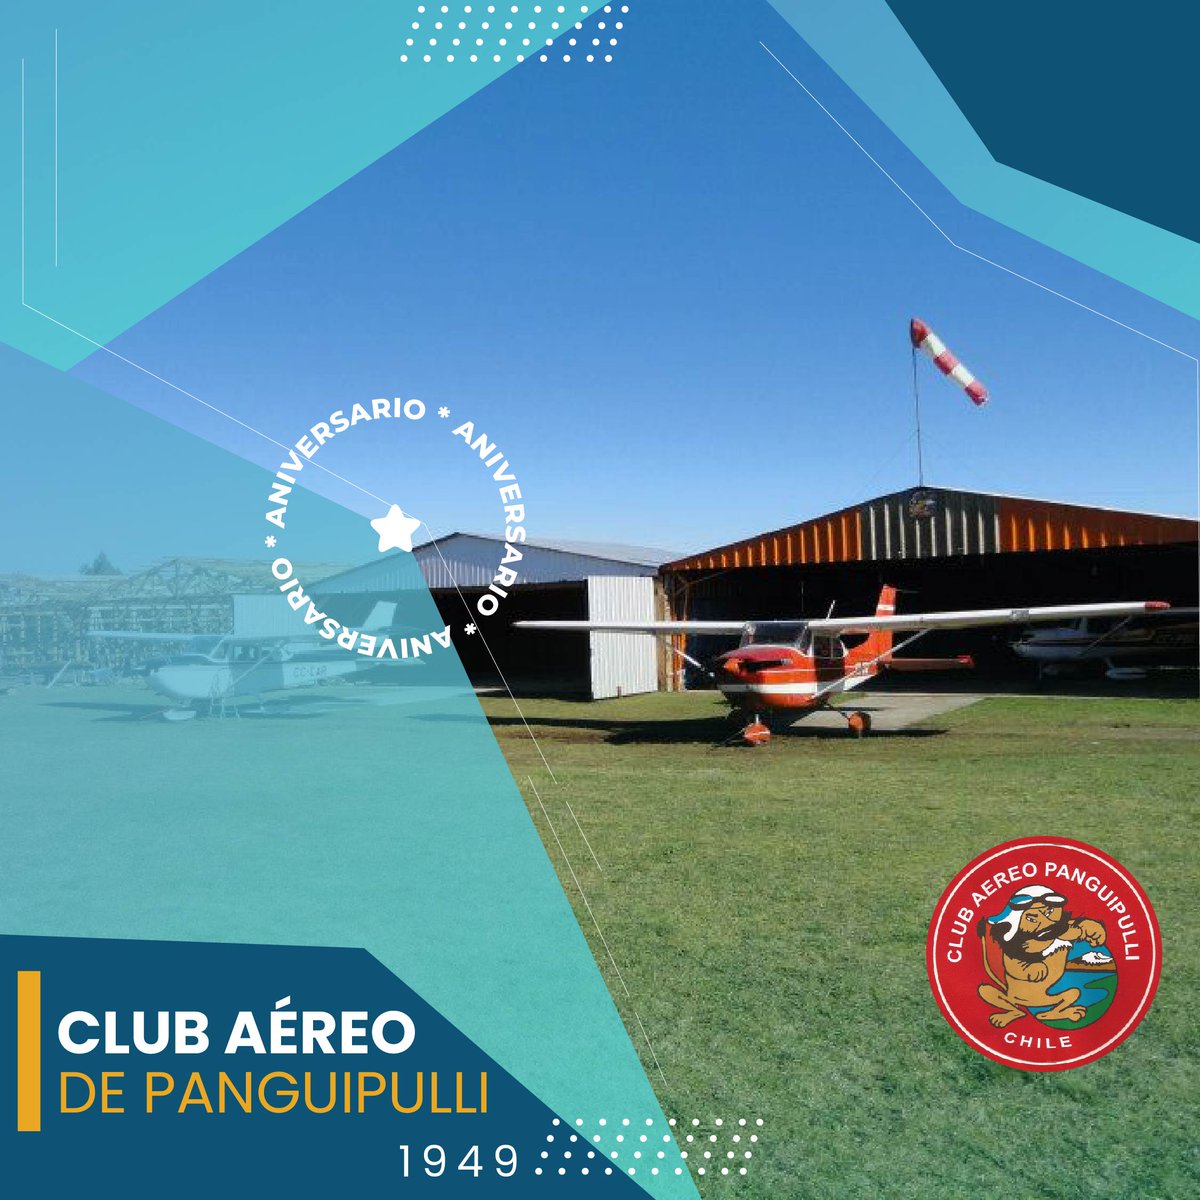 #DatosDGAC Saludamos al Club Aéreo de #Panguipulli en su nuevo aniversario. Juntos hacemos la Aeronáutica Nacional @DGACChile #RedAeroportuaria